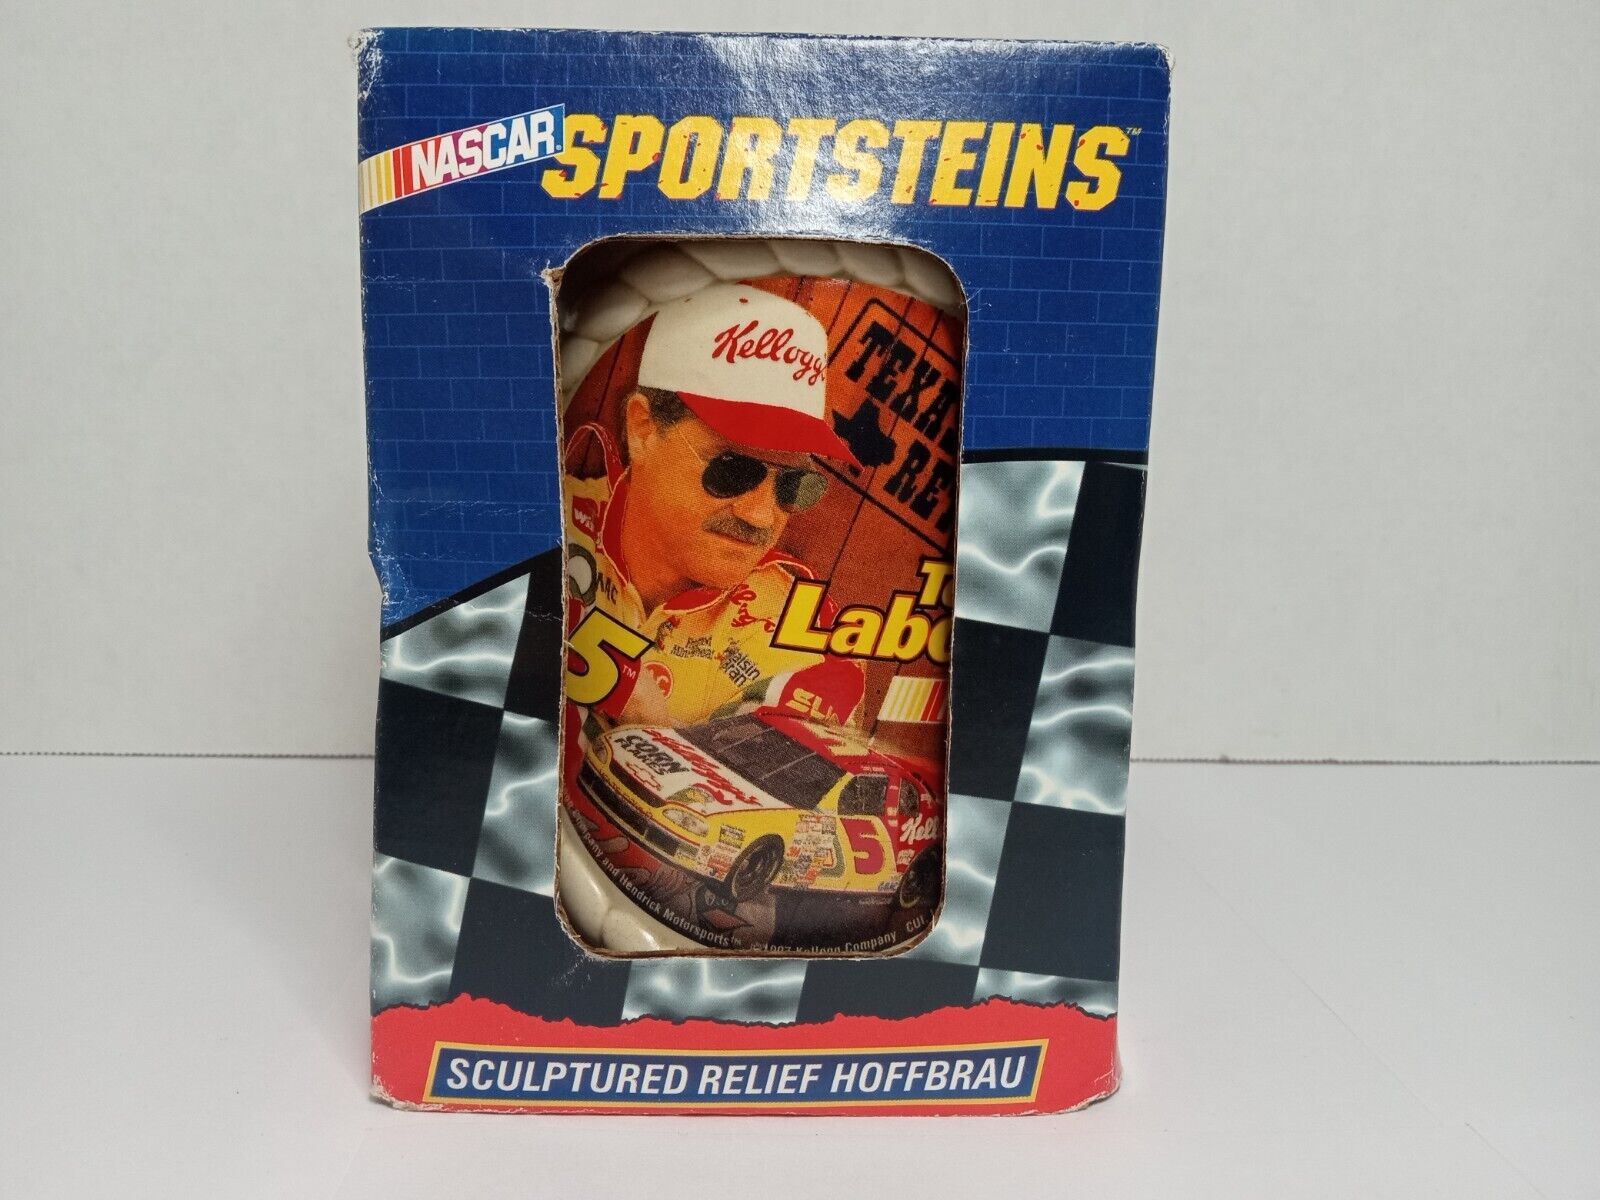 Sports Steins Terry Labonte Beer Stein Cup Mug NASCAR Dram Tree Fine Collectible